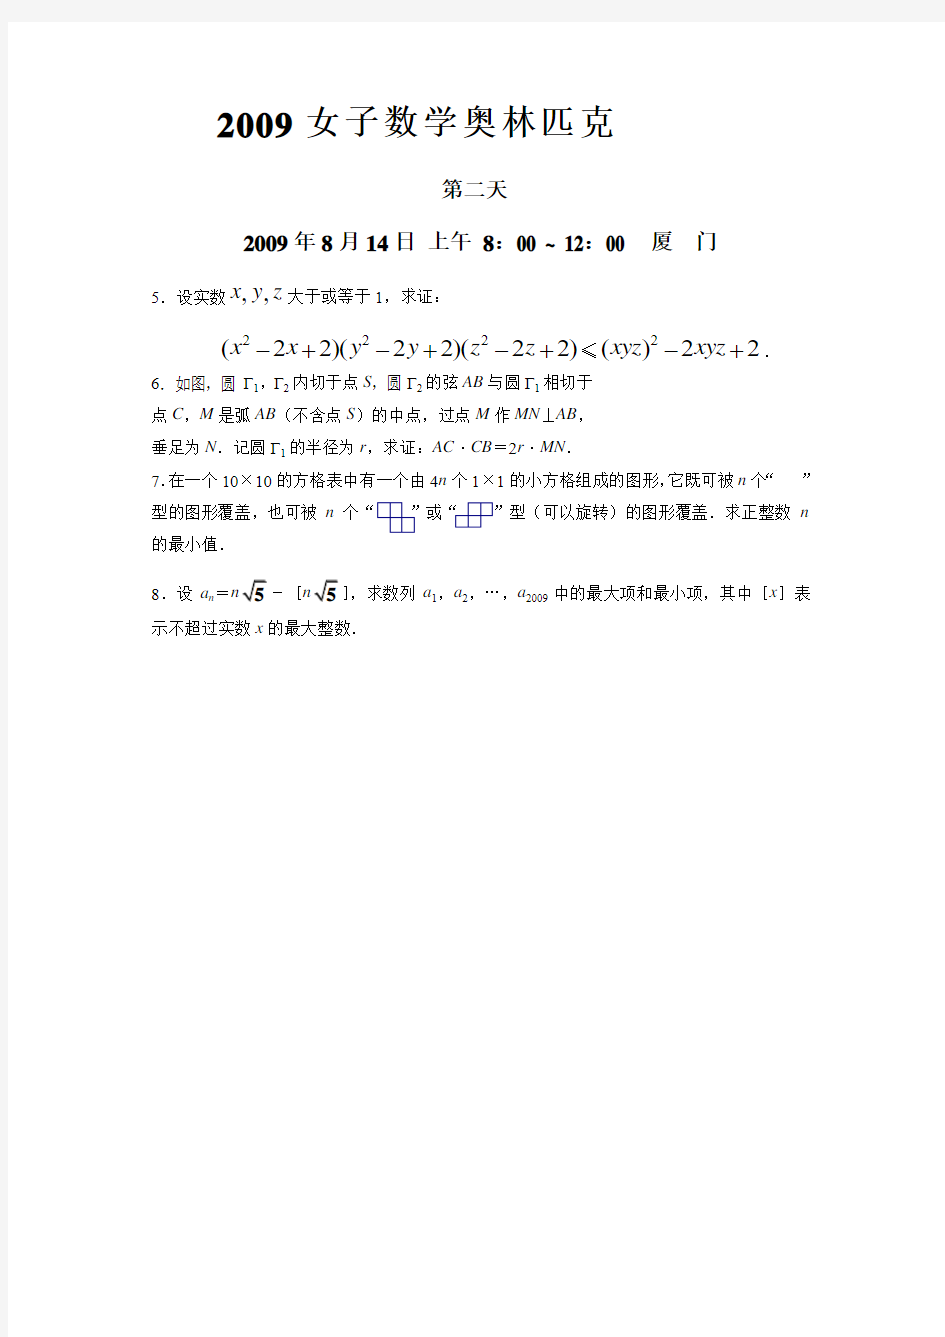 2009中国女子数学奥林匹克试题(中文版)